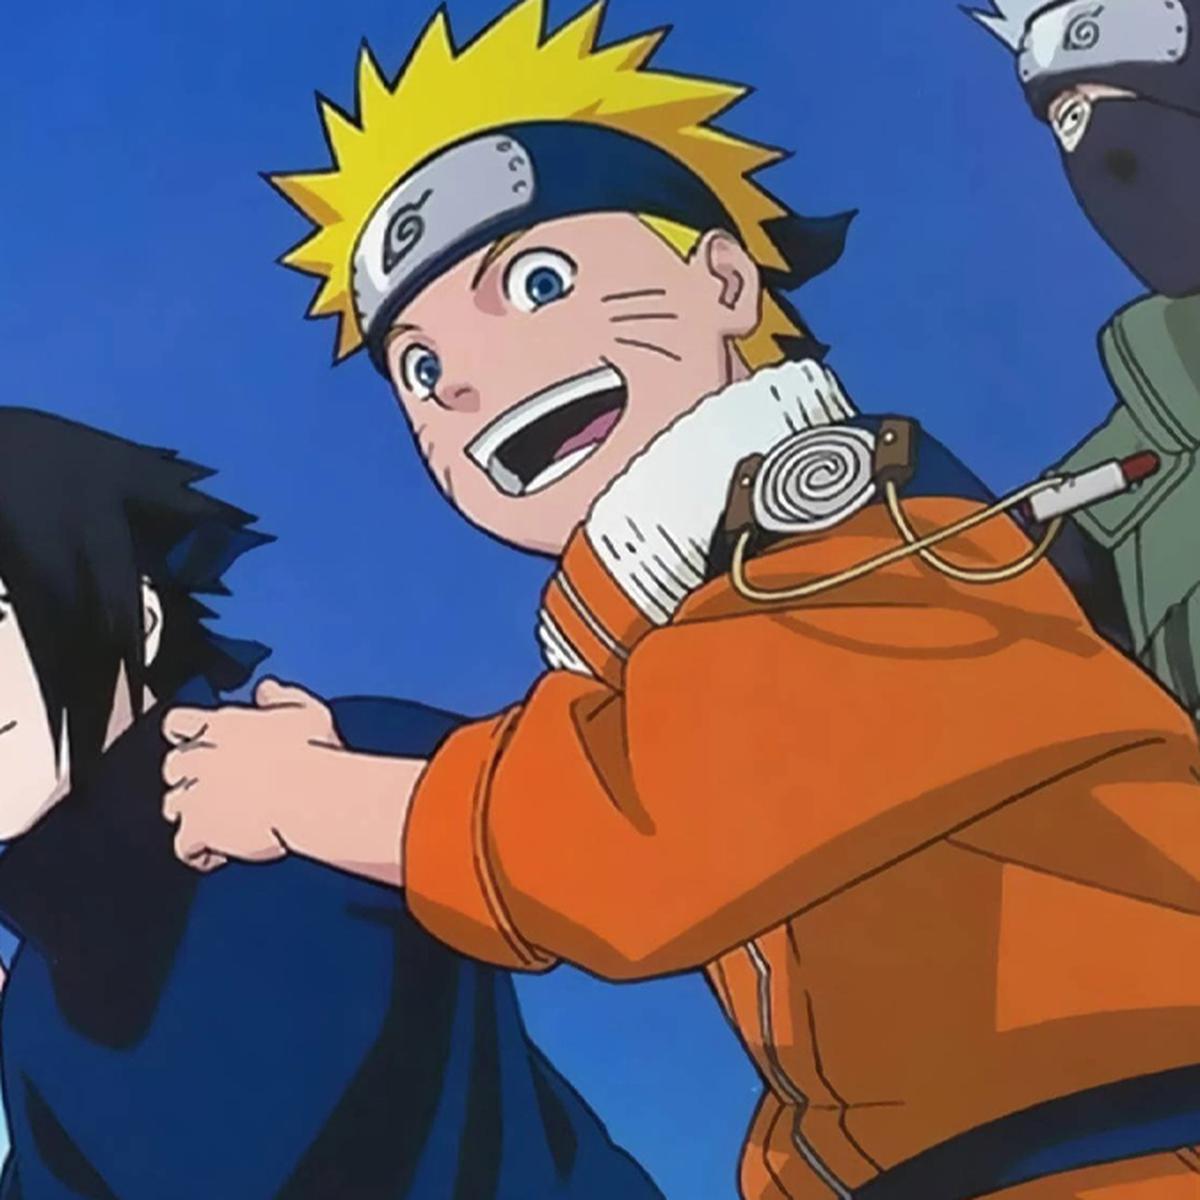 Los nuevos episodios de Naruto se estrenarán en septiembre con la